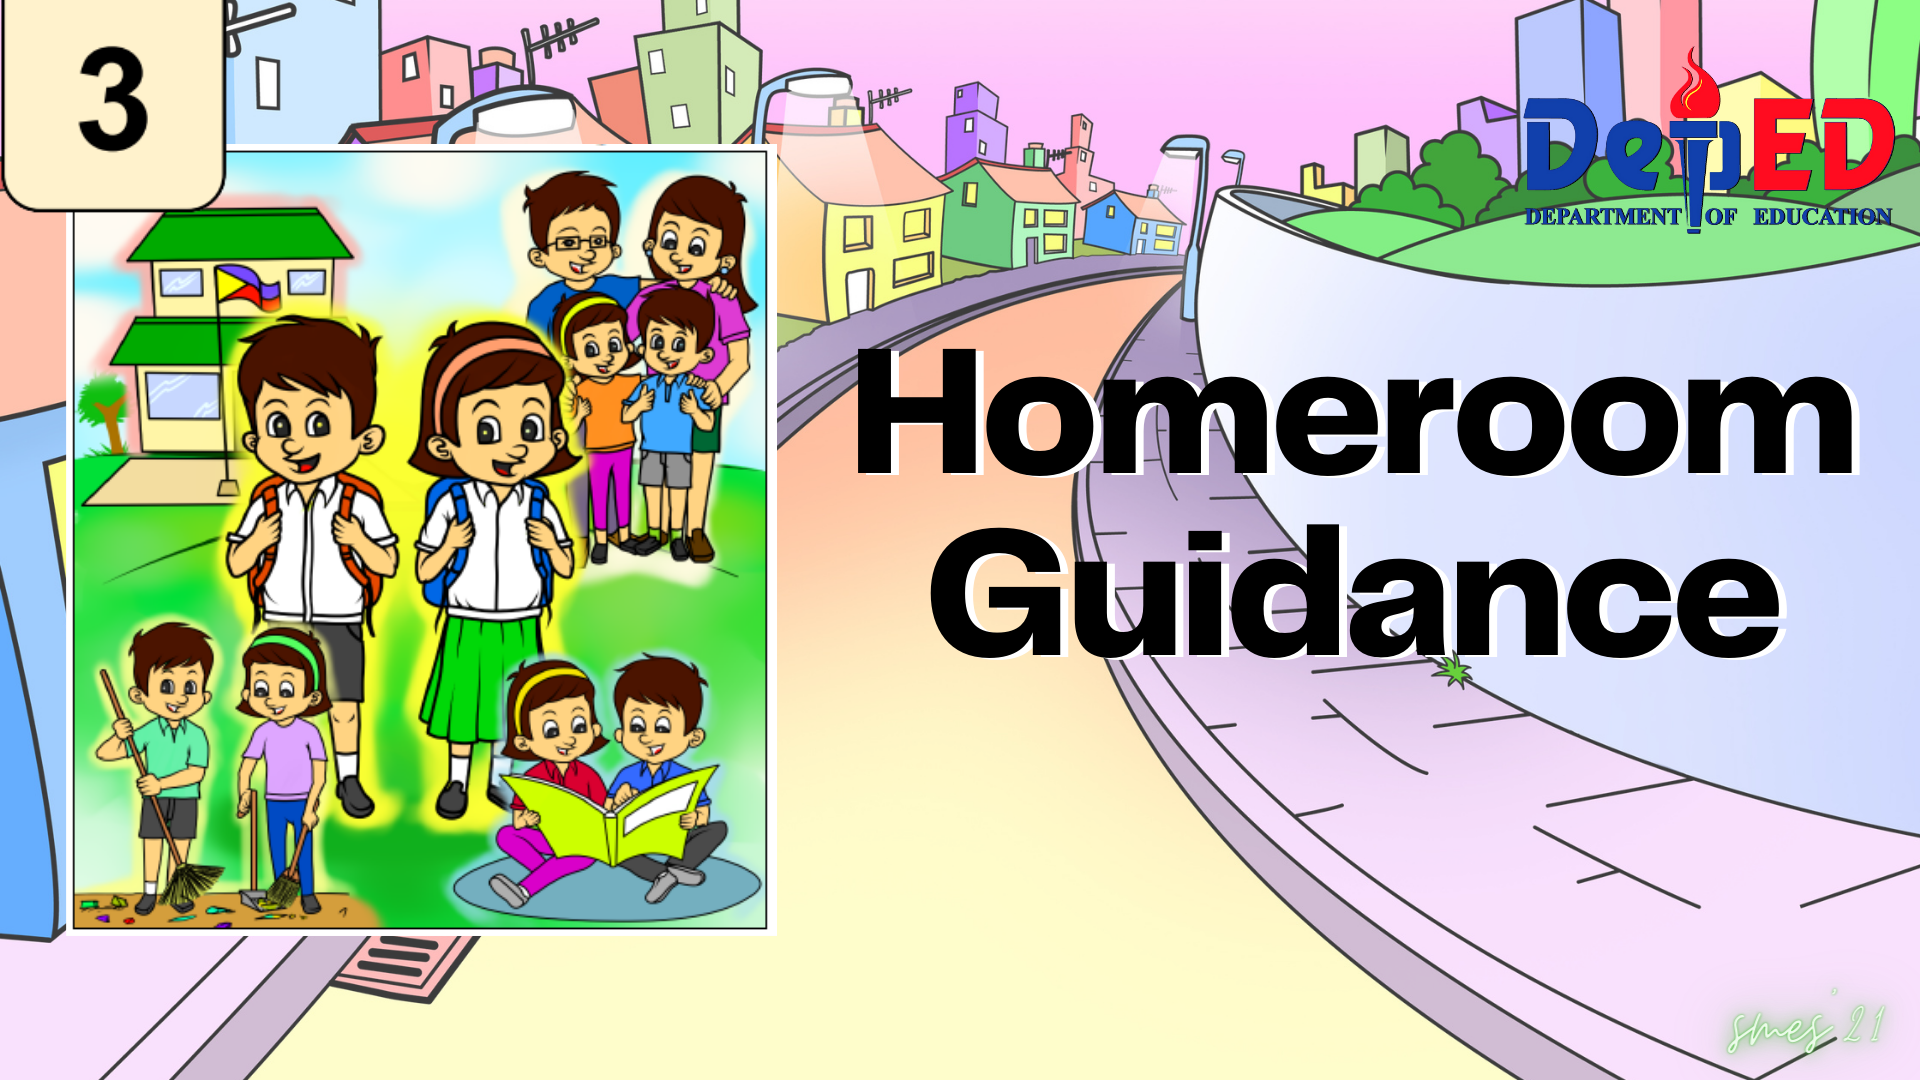 G3 - Homeroom Guidance Quarter 4 Mary Joy De Vera